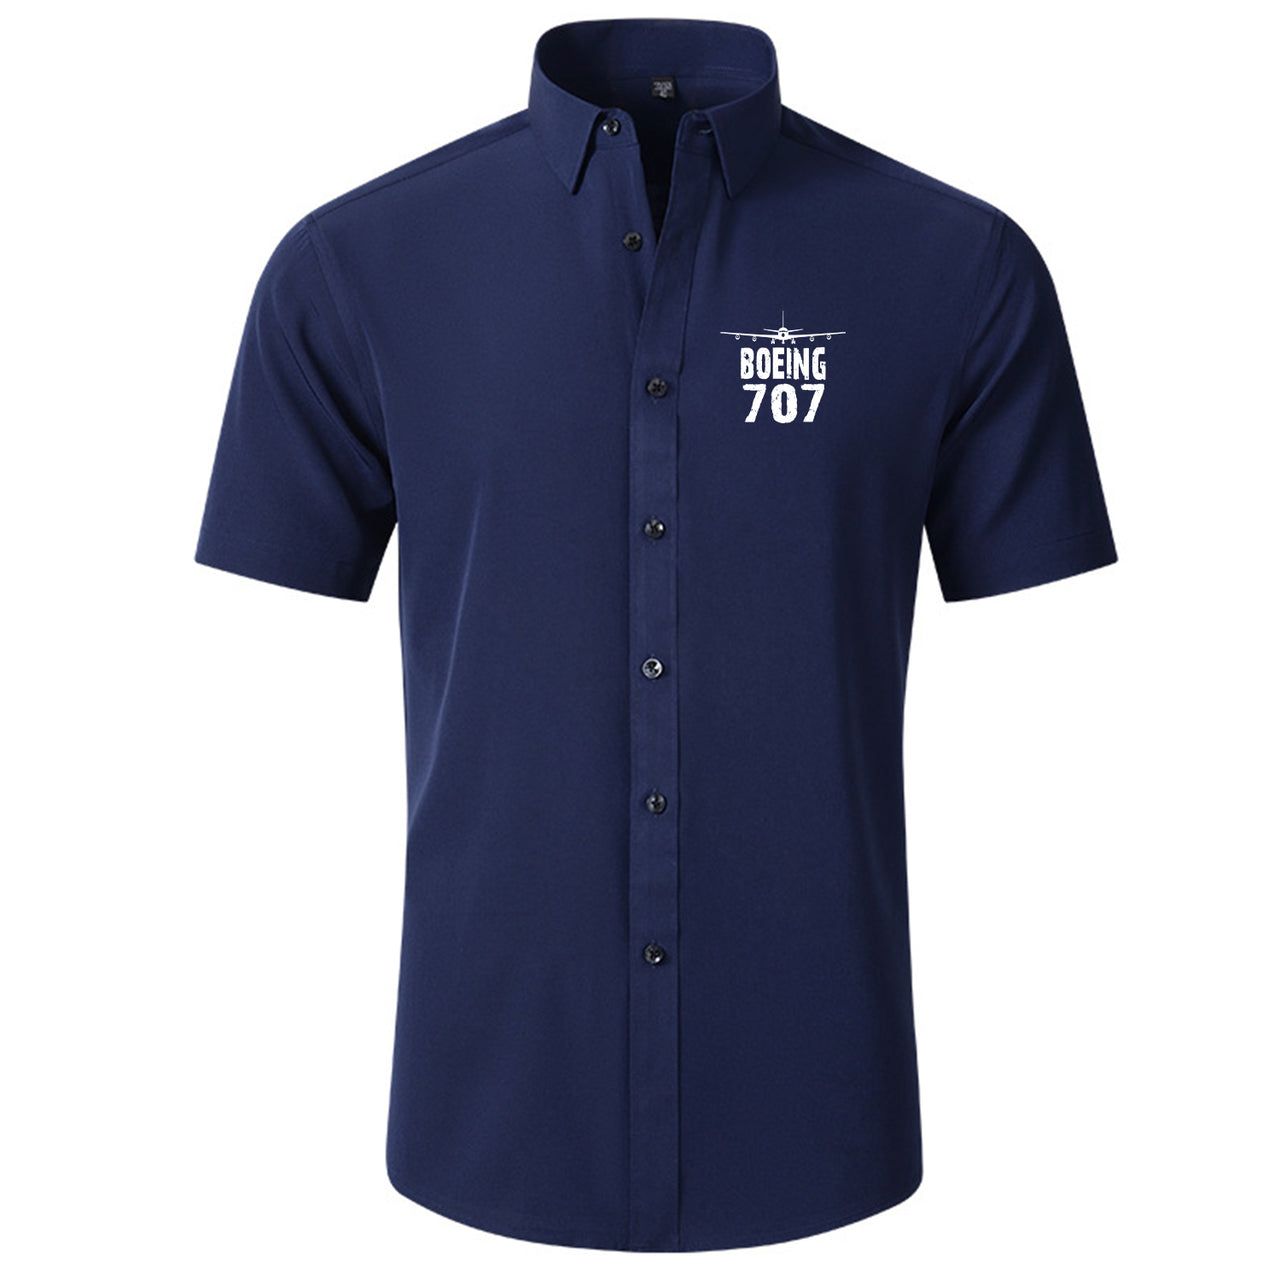 Boeing 707 & Plane Designed Short Sleeve Shirts